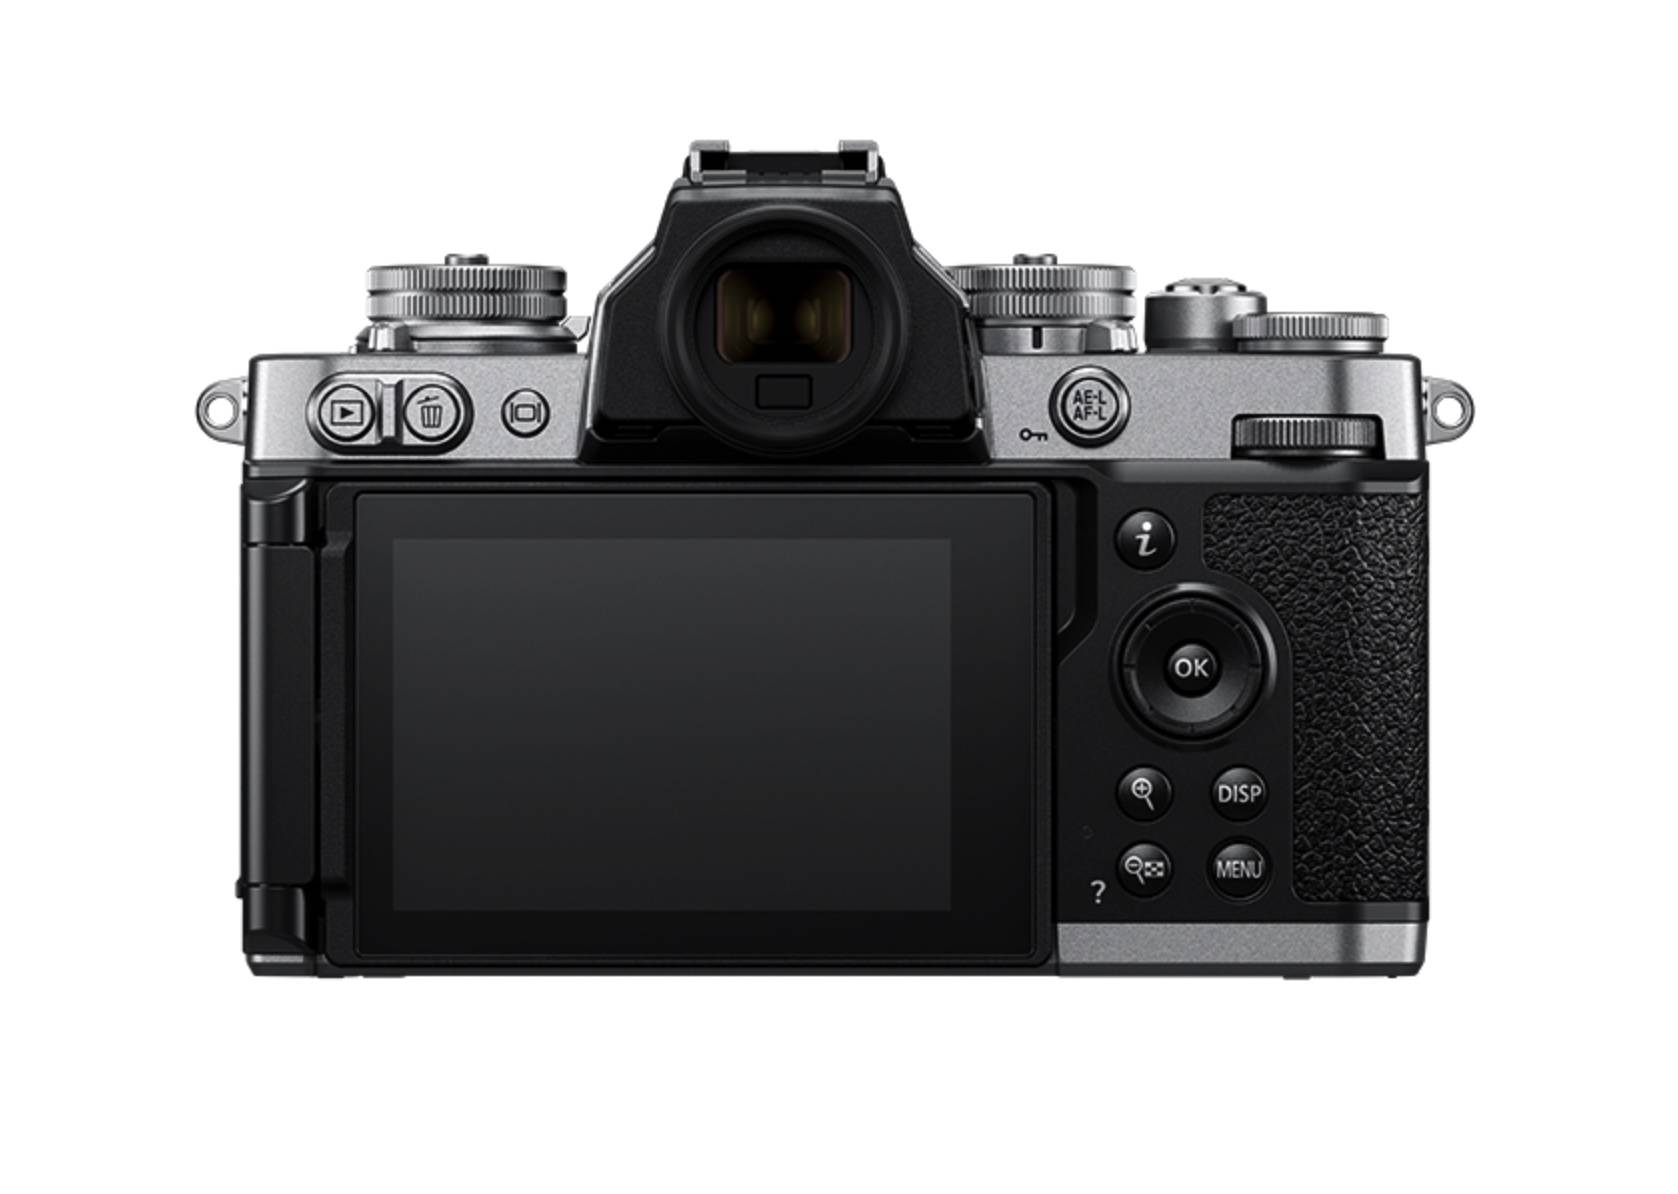 Neugravur der klassischen FM2, Nikon spiegellose Kamera Z fc veröffentlicht - iShot2021 06 29 19.45.27